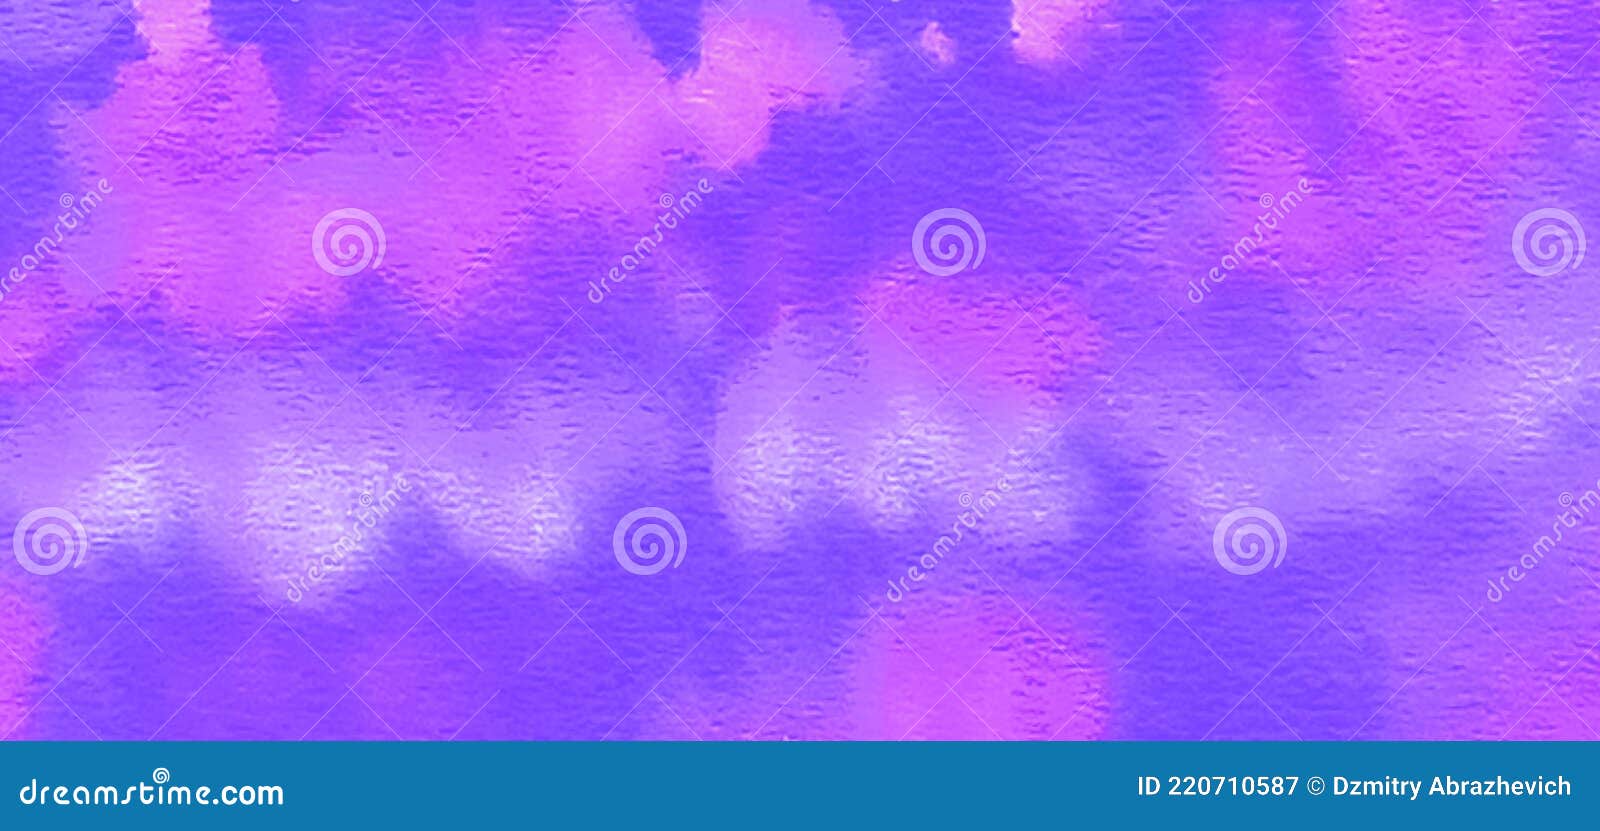 水彩设计 蜡染壁纸 染色时装面料 紫水色设计 香草蓝紫色 棉花糖的感觉 库存图片 图片包括有绘画 奶油